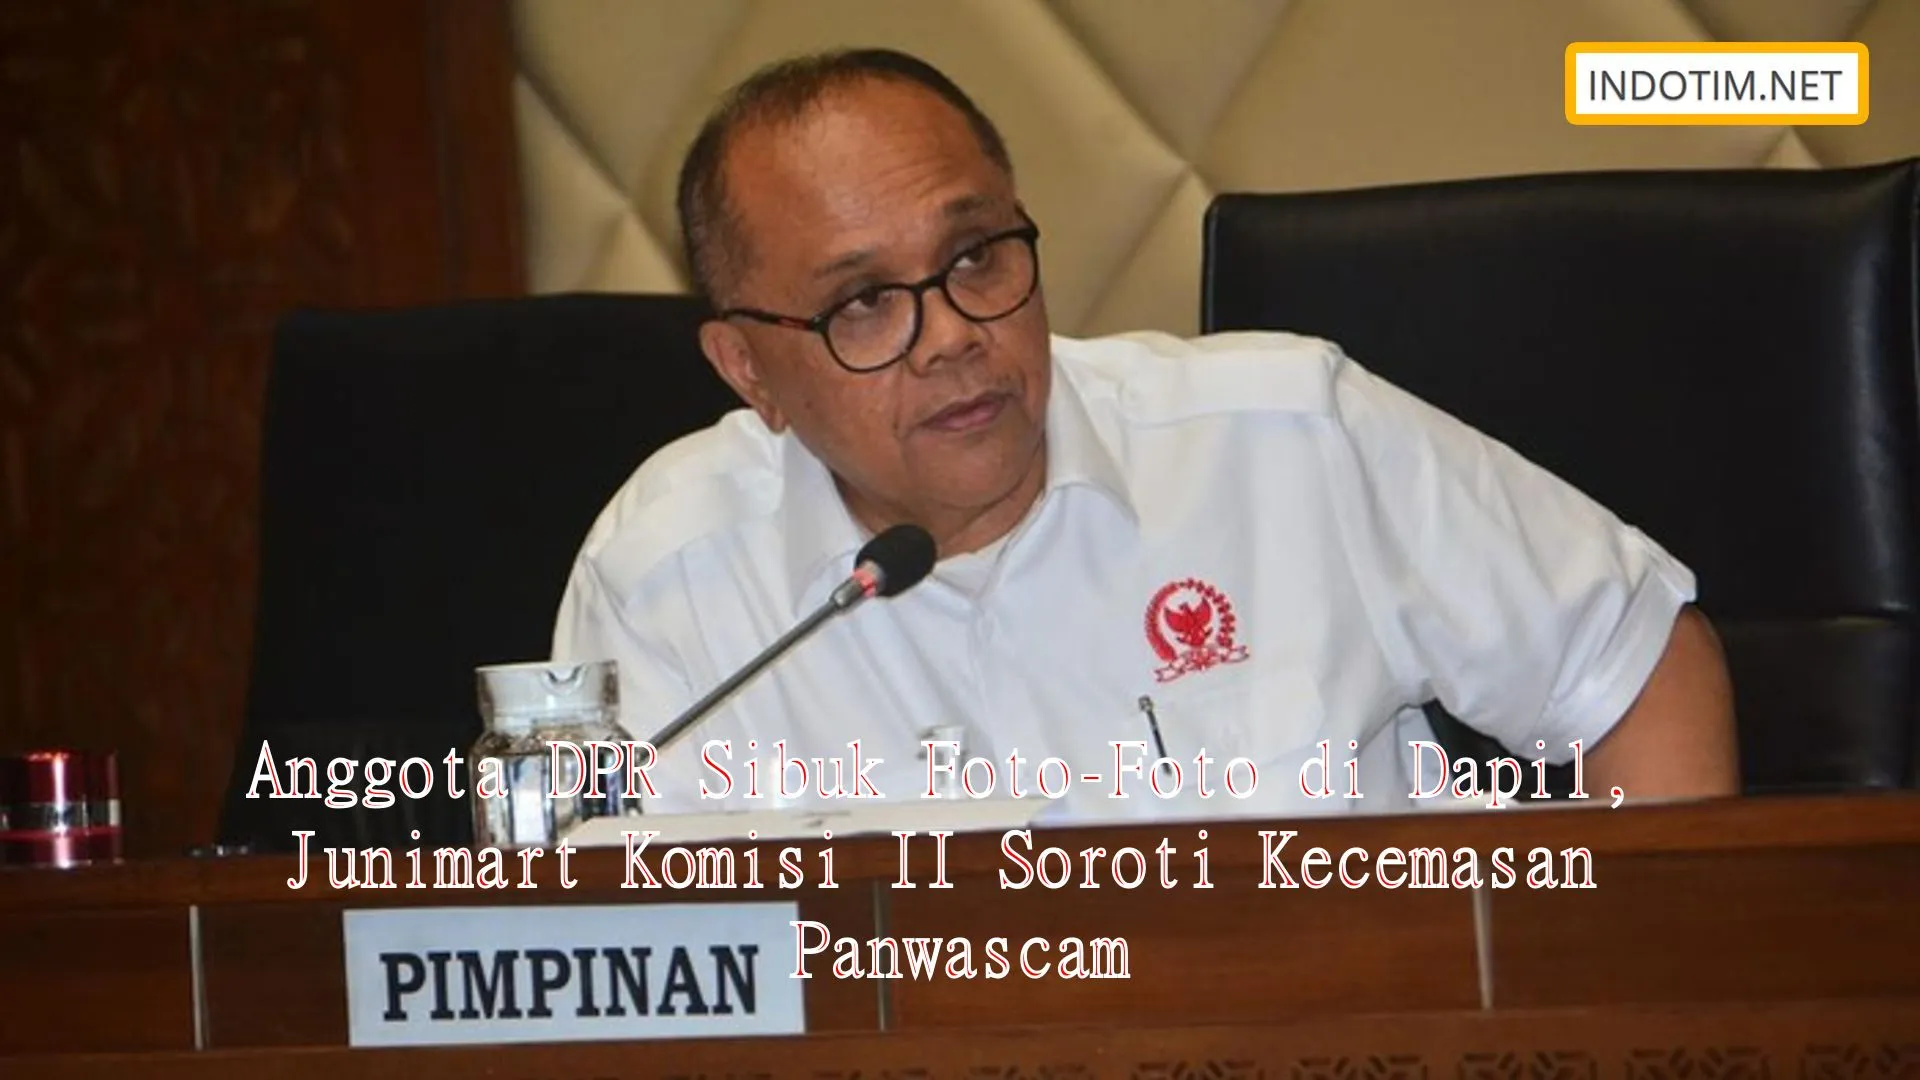 Anggota DPR Sibuk Foto-Foto di Dapil, Junimart Komisi II Soroti Kecemasan Panwascam